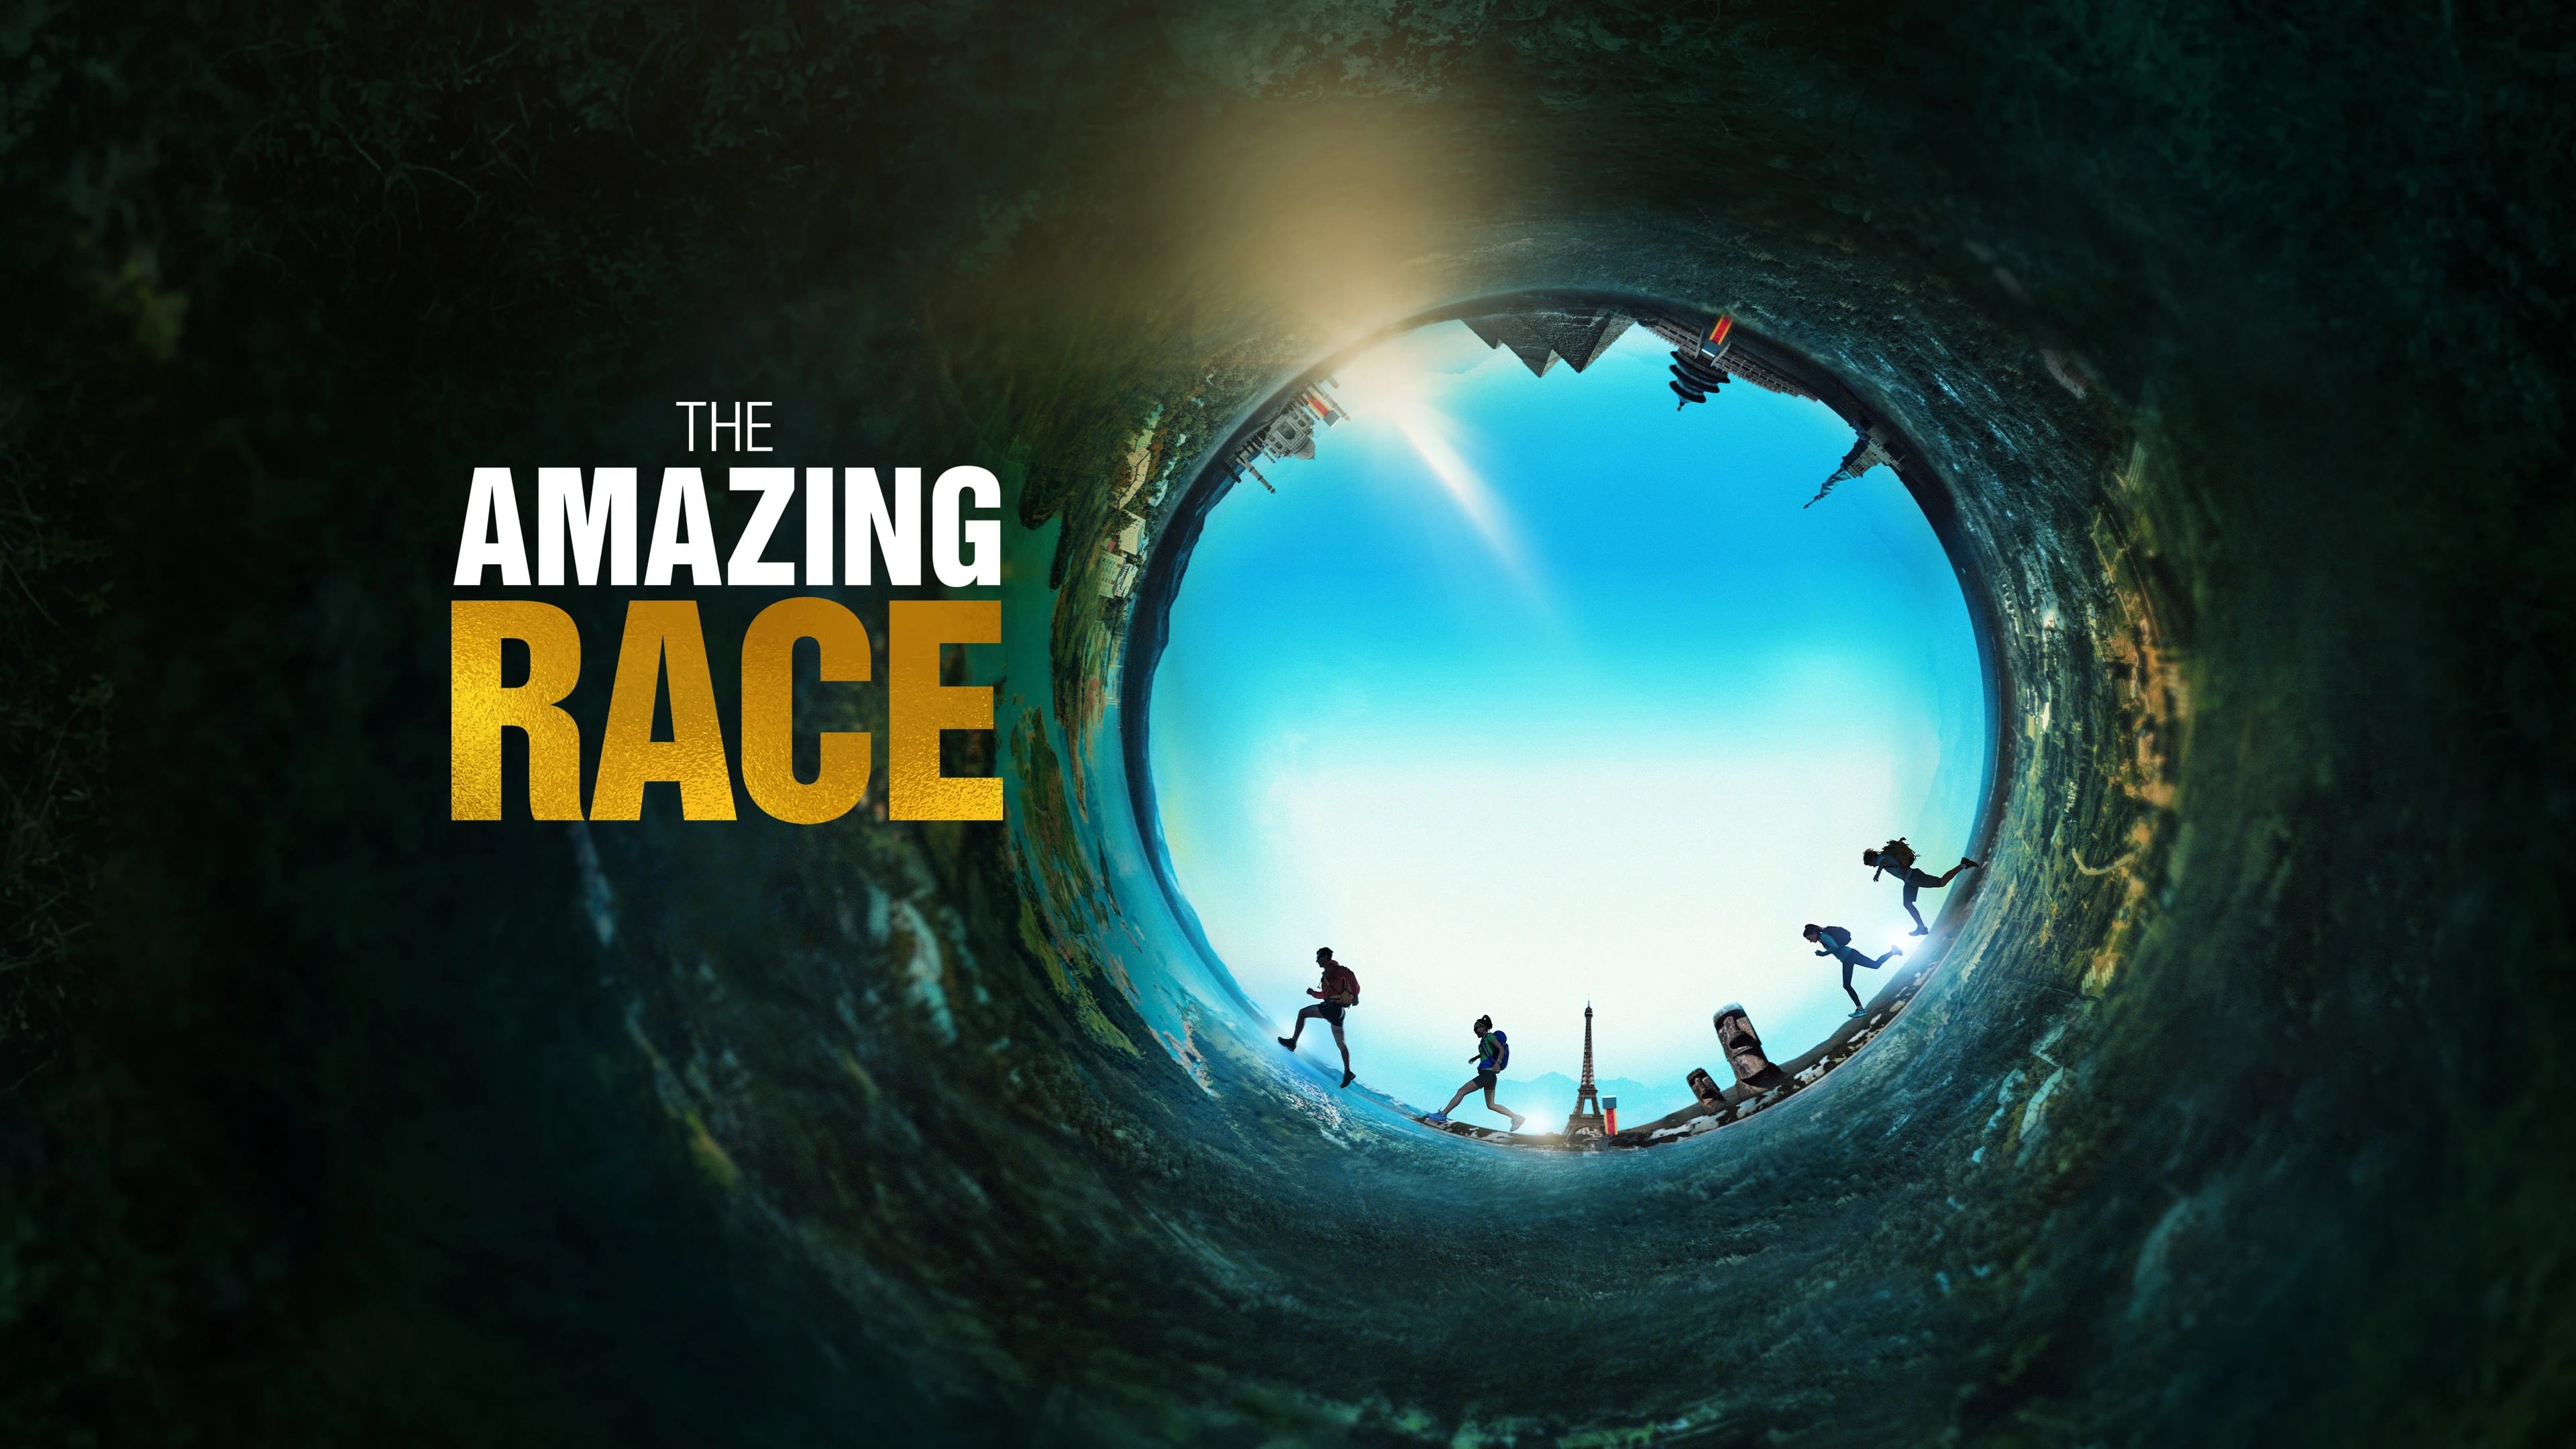 The Amazing Race - Season 32